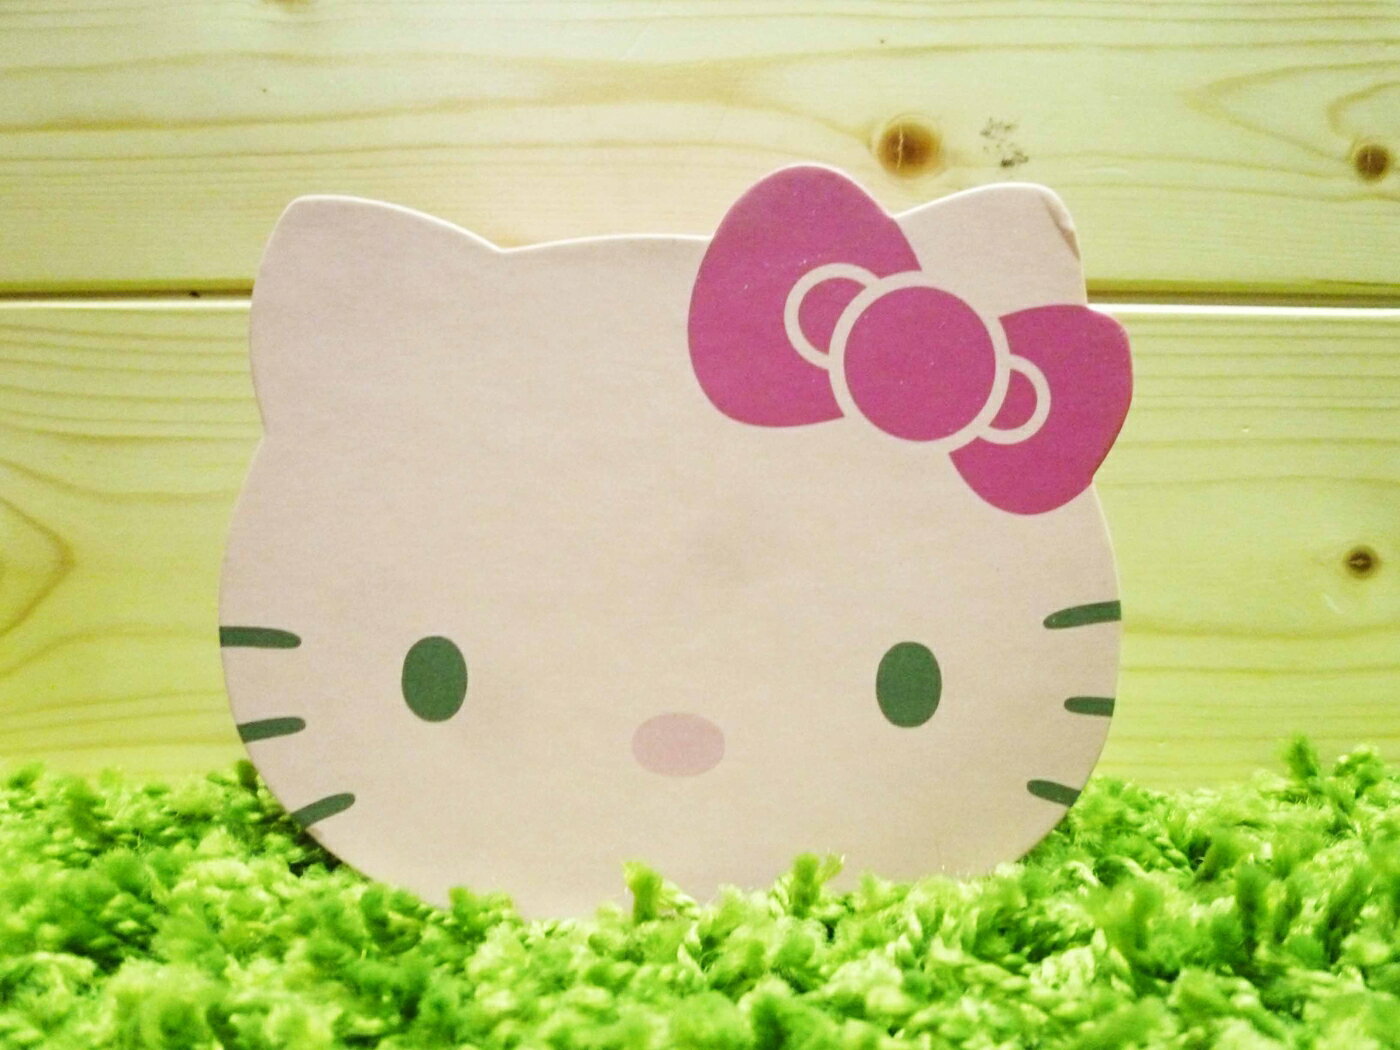 【震撼精品百貨】Hello Kitty 凱蒂貓 便條紙附整理盒-粉色(S)【共1款】 震撼日式精品百貨